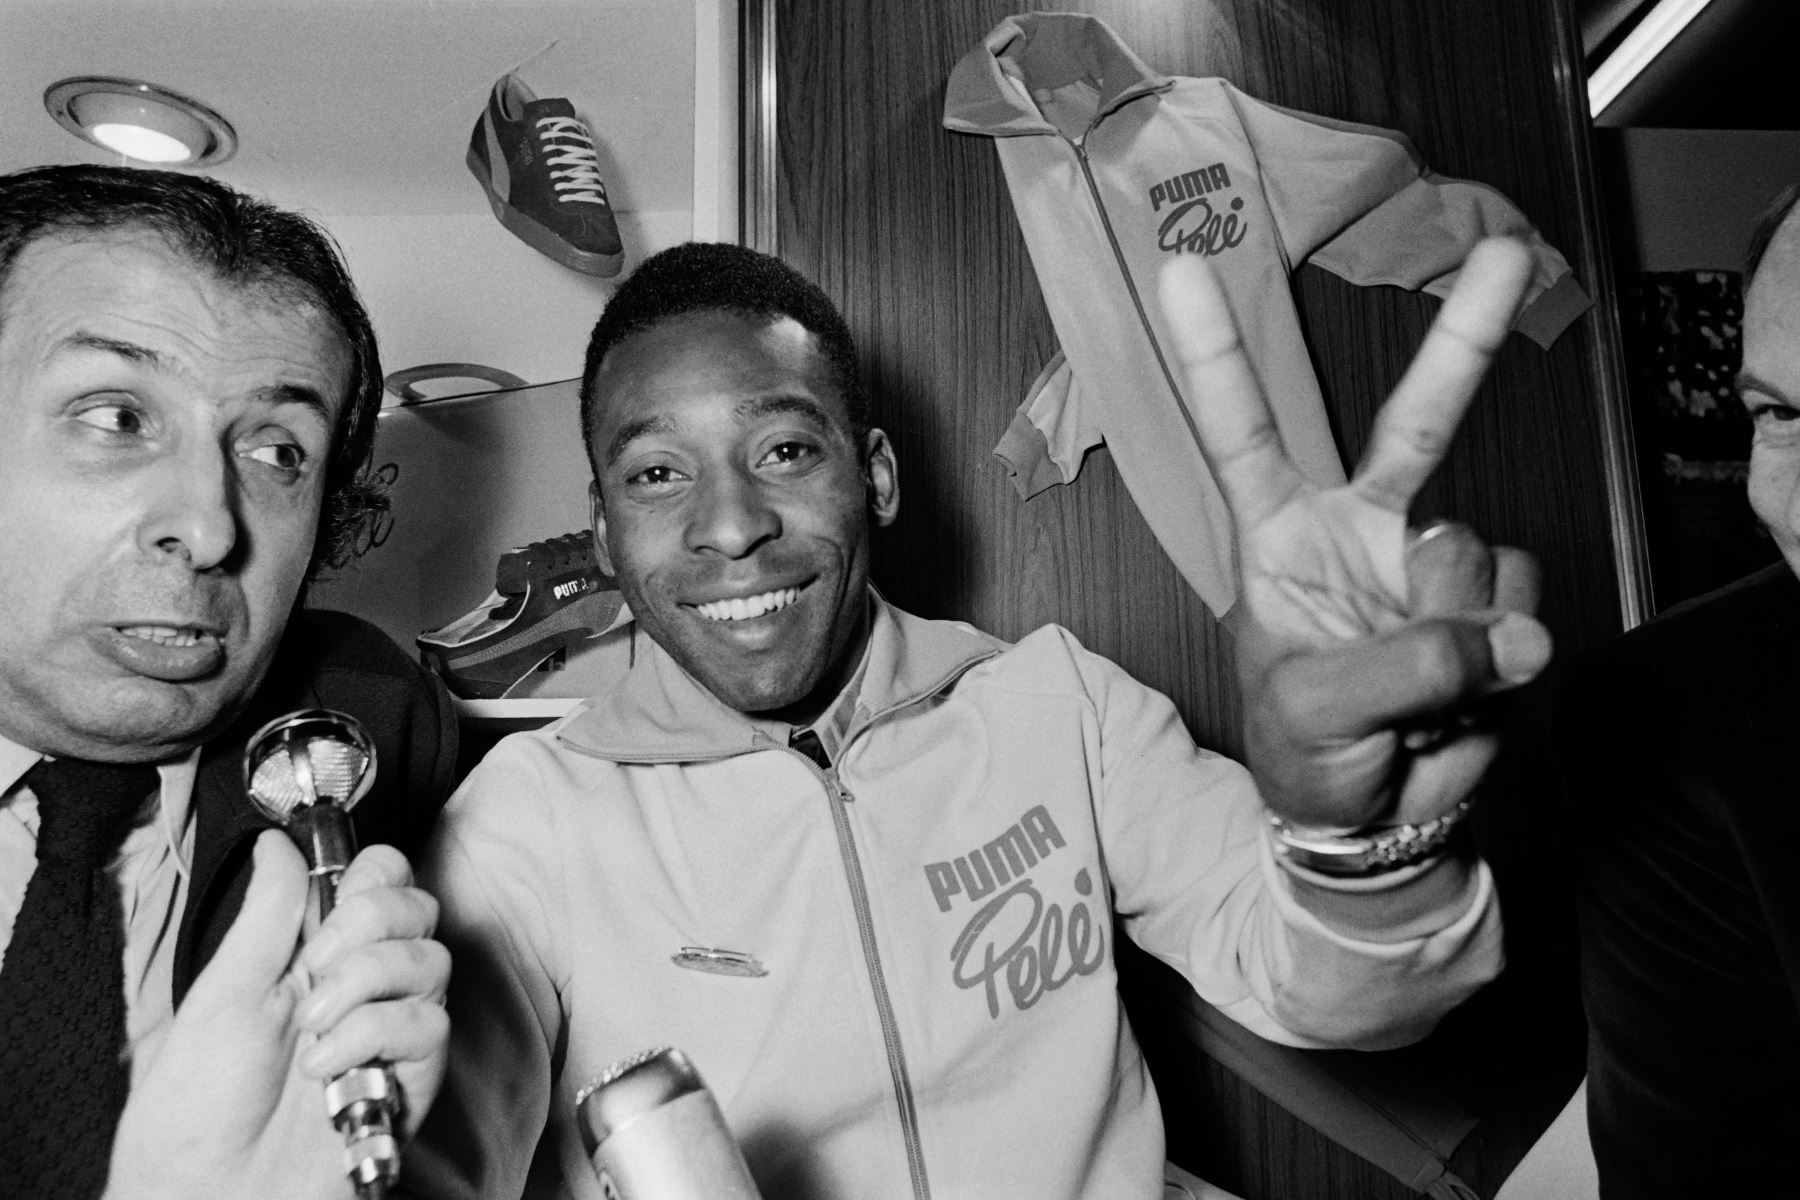 La estrella del fútbol brasileño Pelé hace el signo de la victoria el 20 de diciembre de 1971 durante una conferencia de prensa en París. Foto: AFP